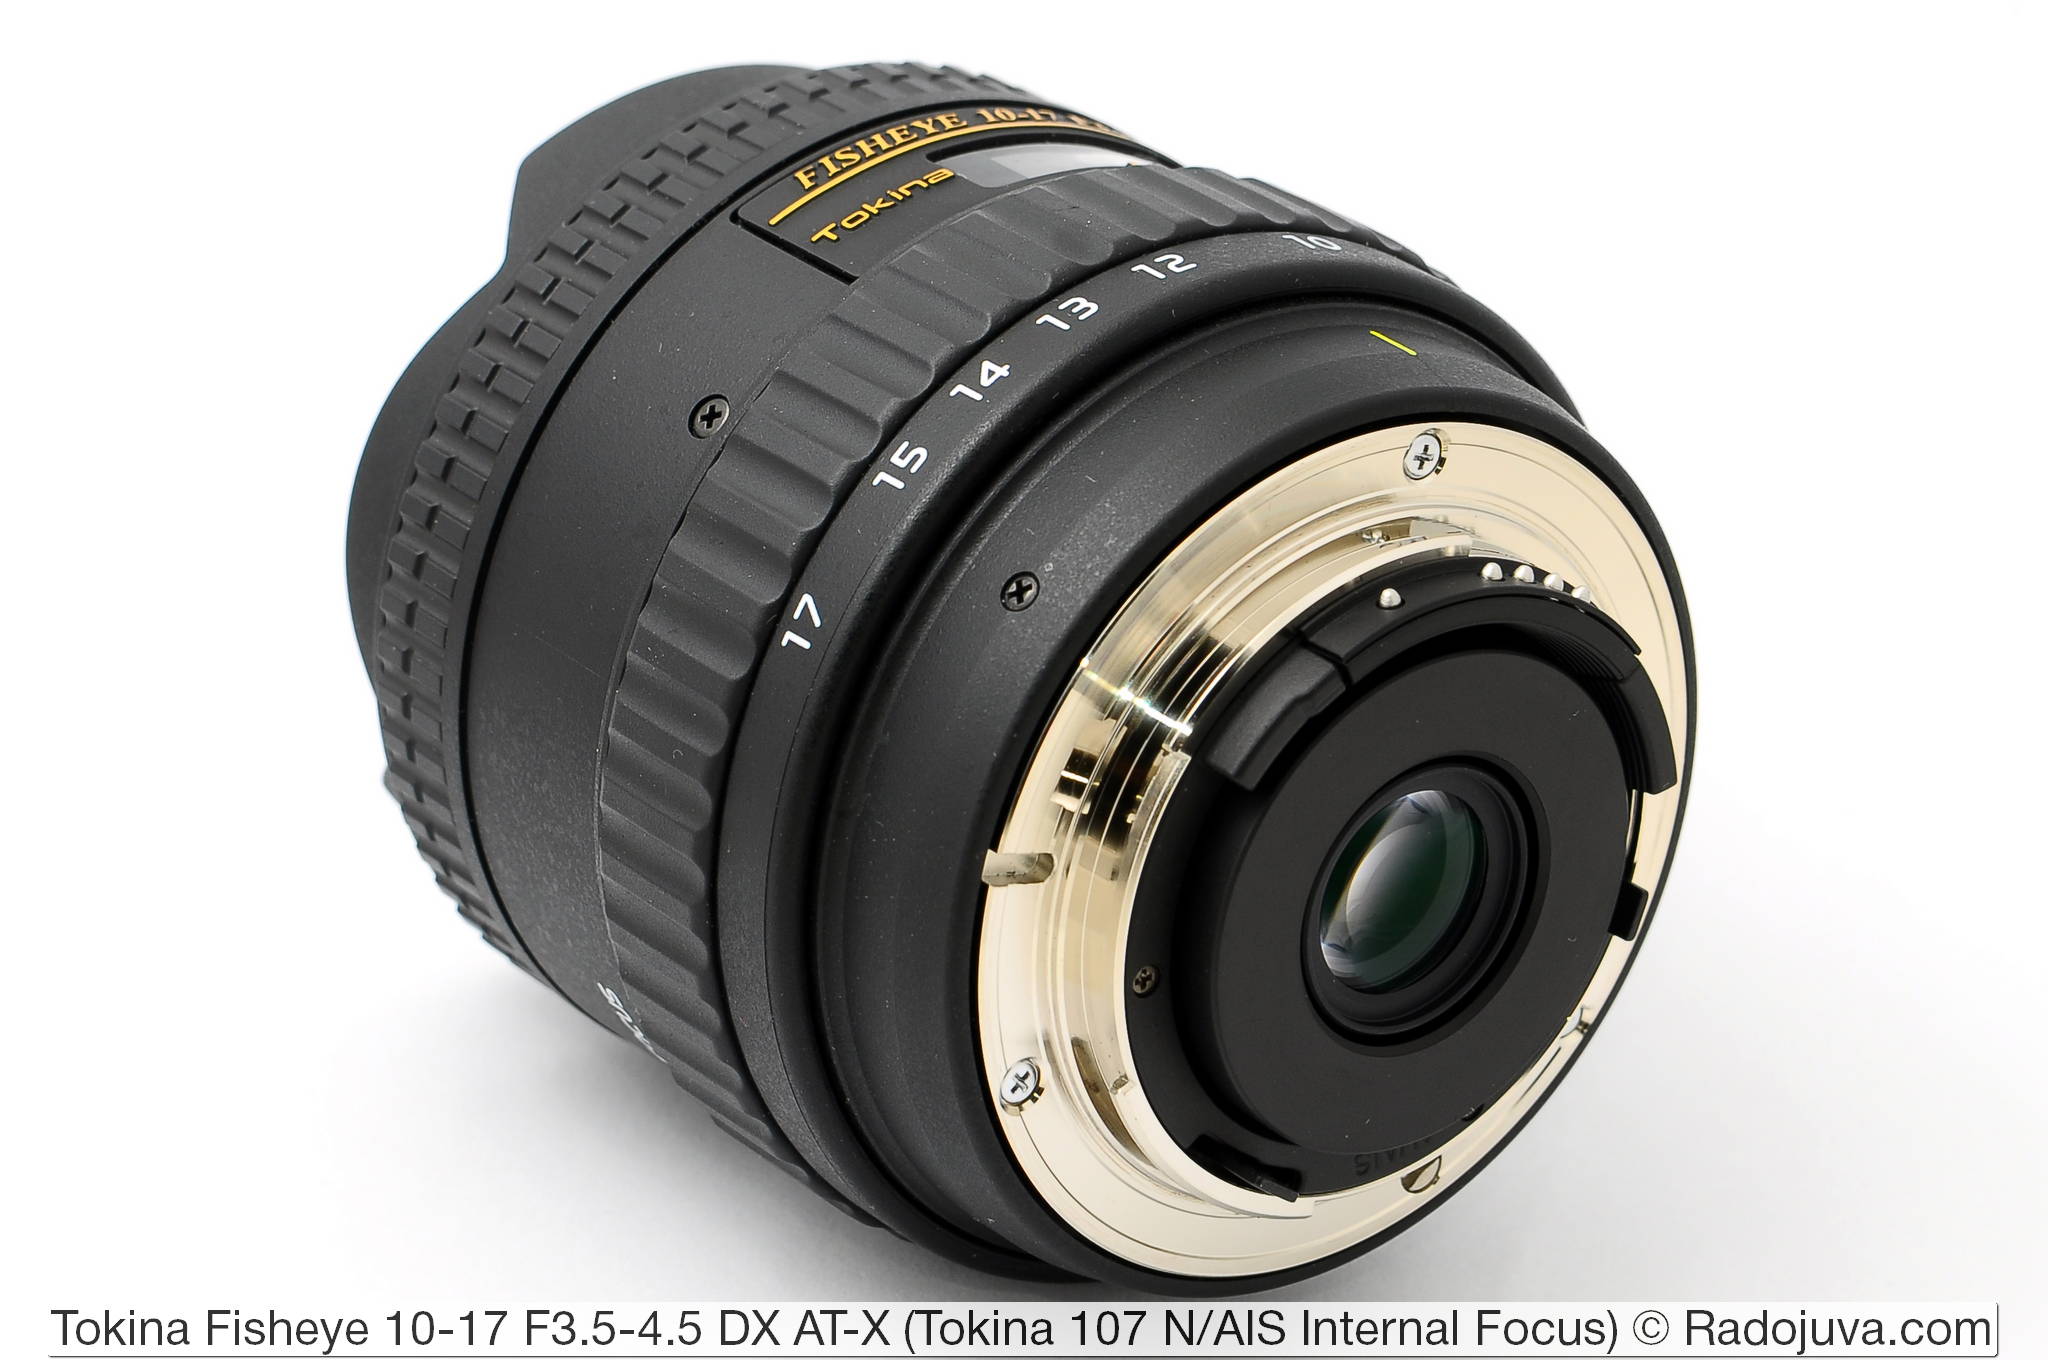 Tokina 107 Fisheye 10-17mm F3.5-4.5 DX AT-X interne focus